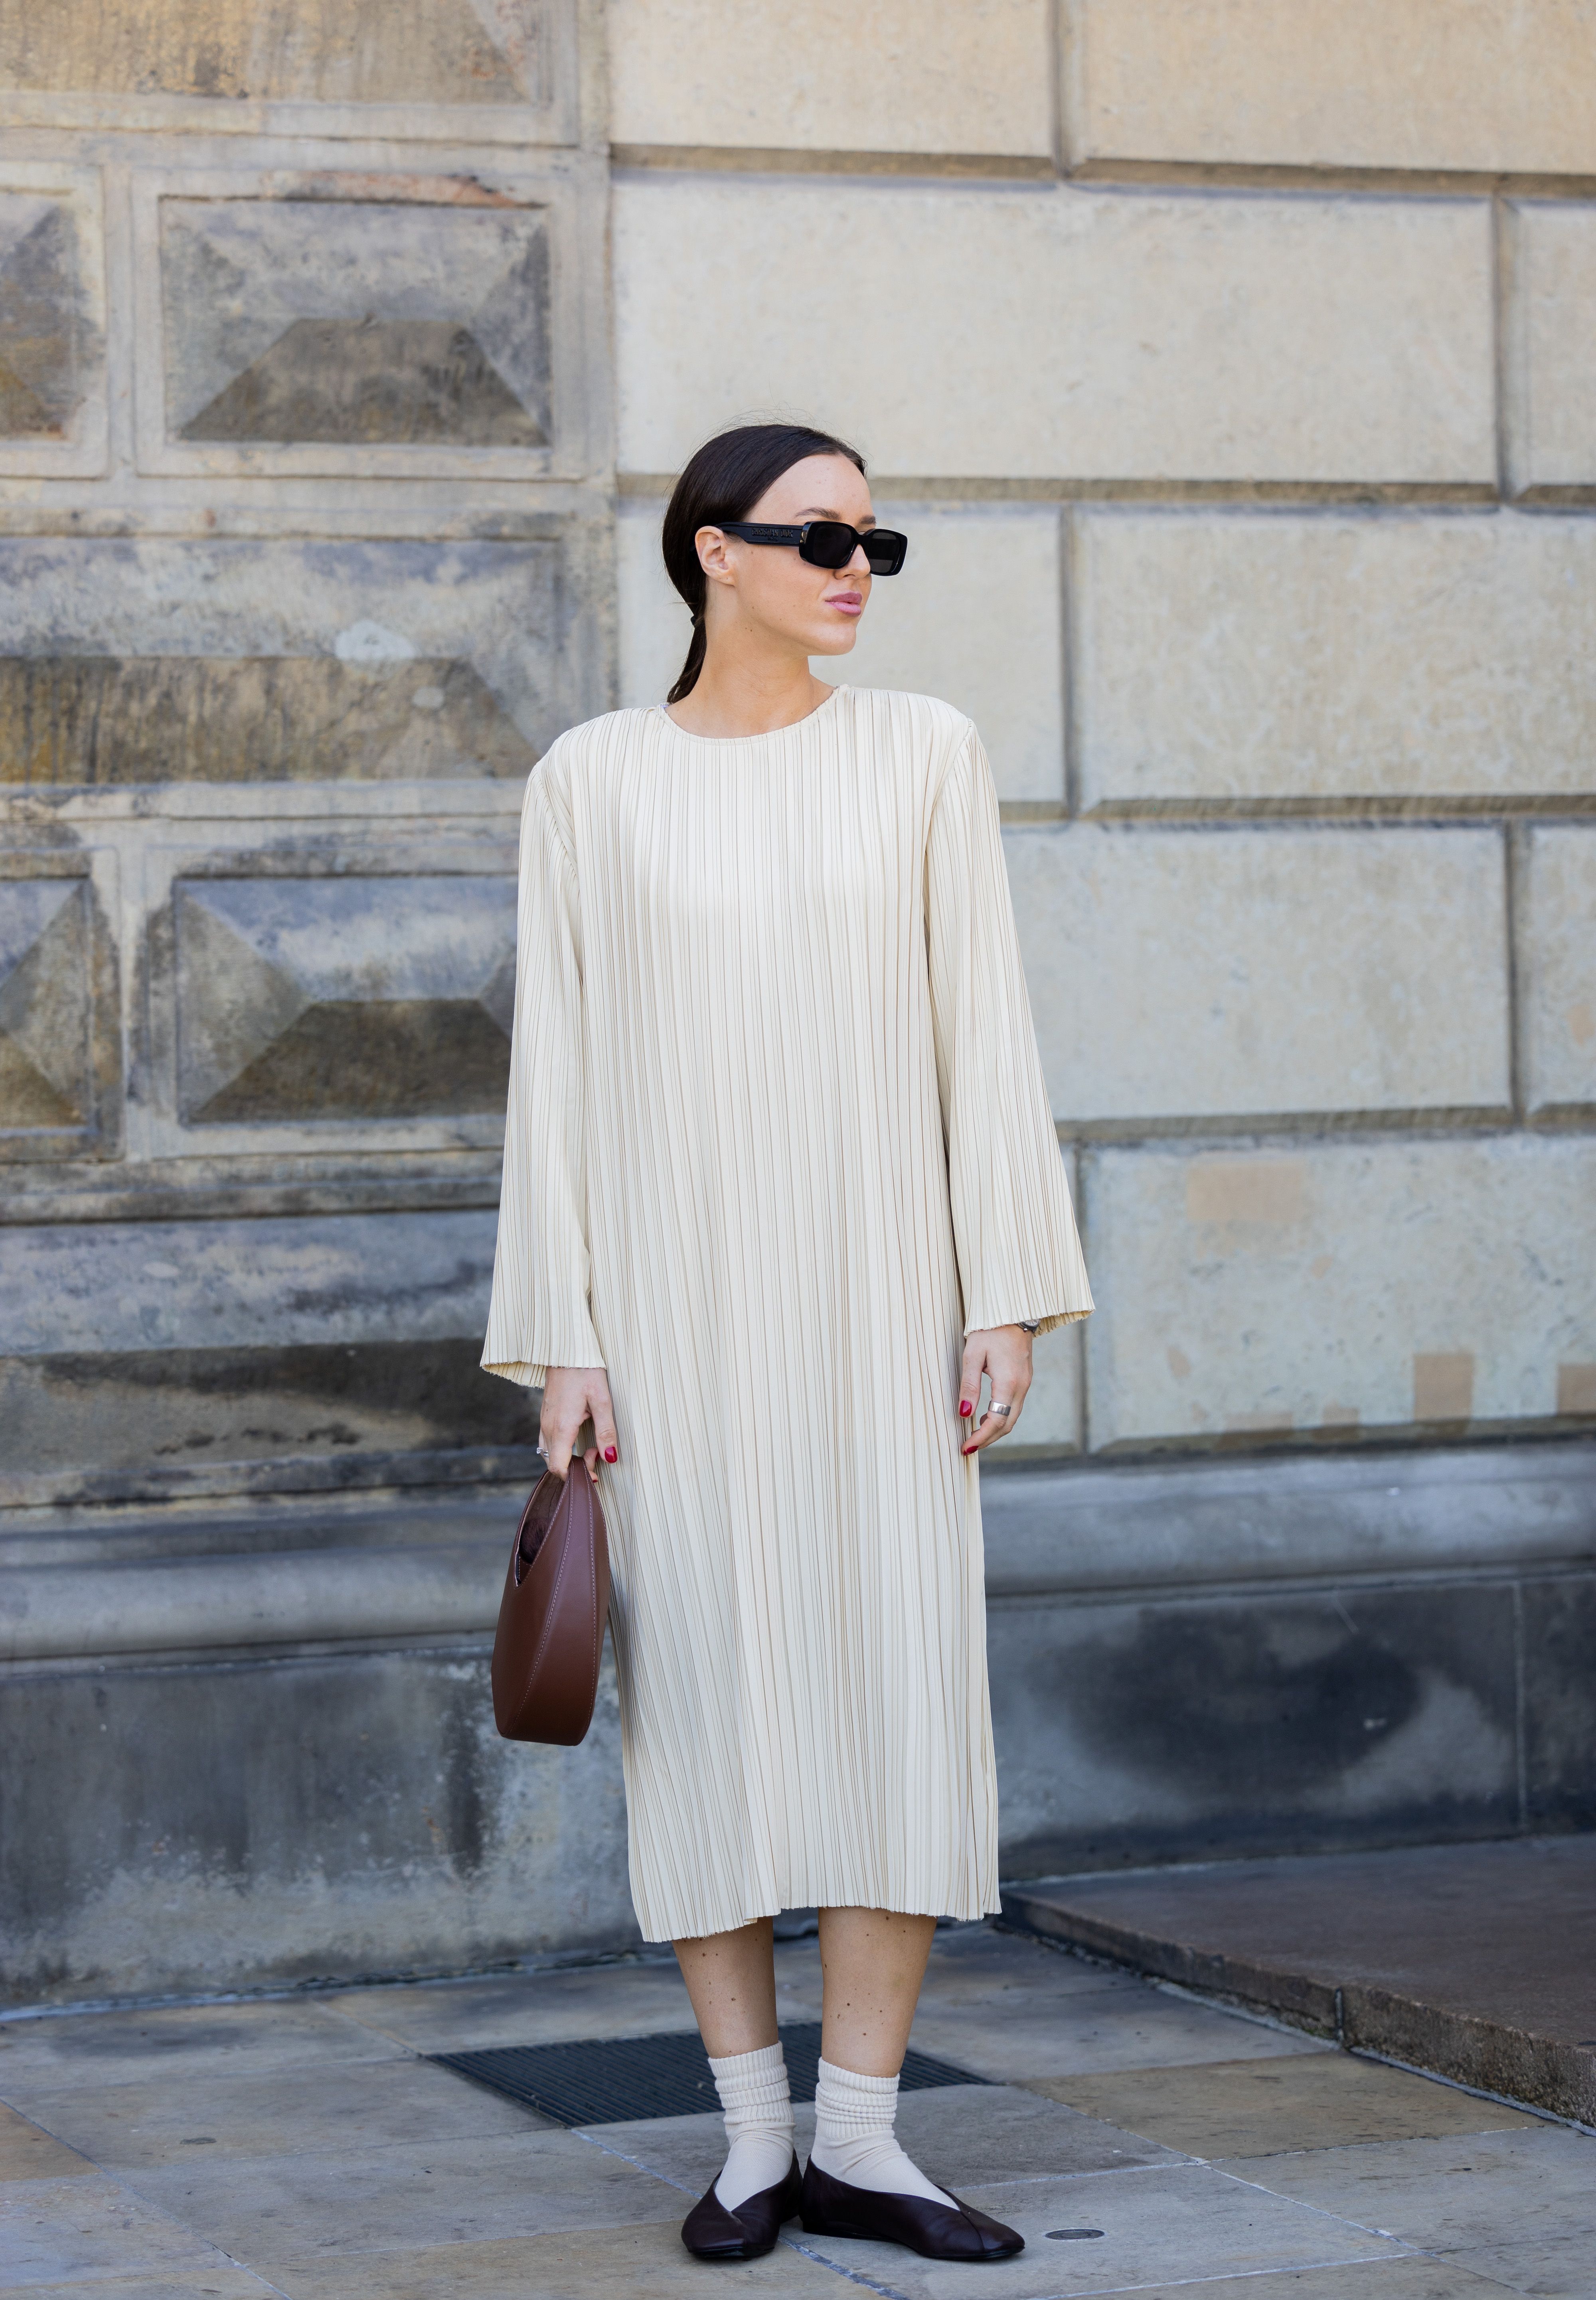 Diez vestidos para llevar la tendencia 'knitted' a la oficina